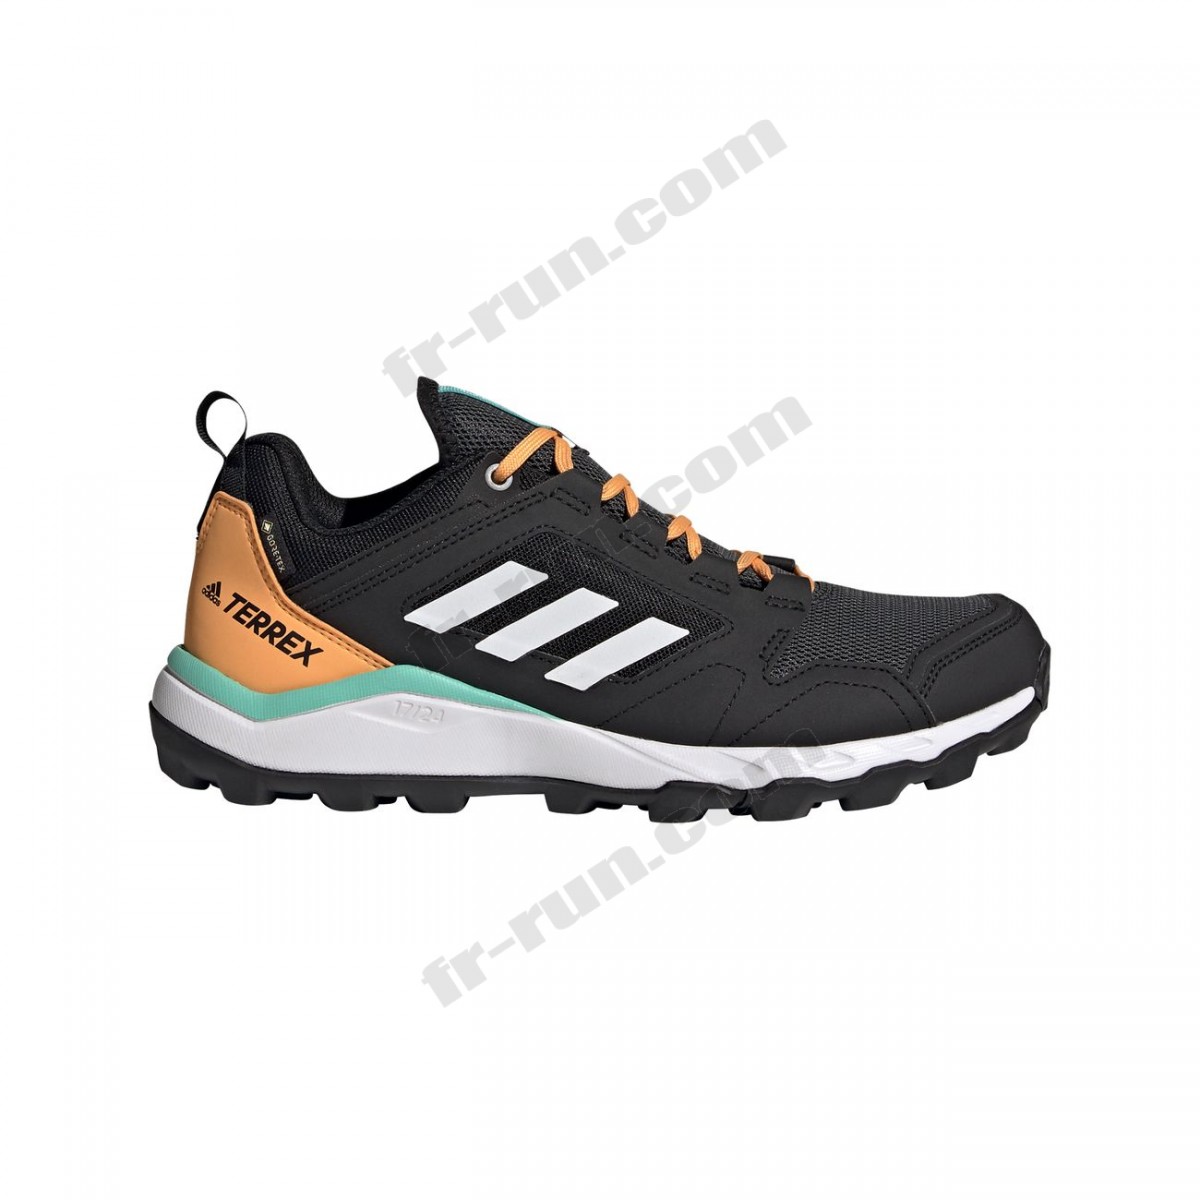 Adidas/Course à pied femme ADIDAS Chaussures de trail femme adidas Terrex Agravic GORE-TEX √ Nouveau style √ Soldes - -1